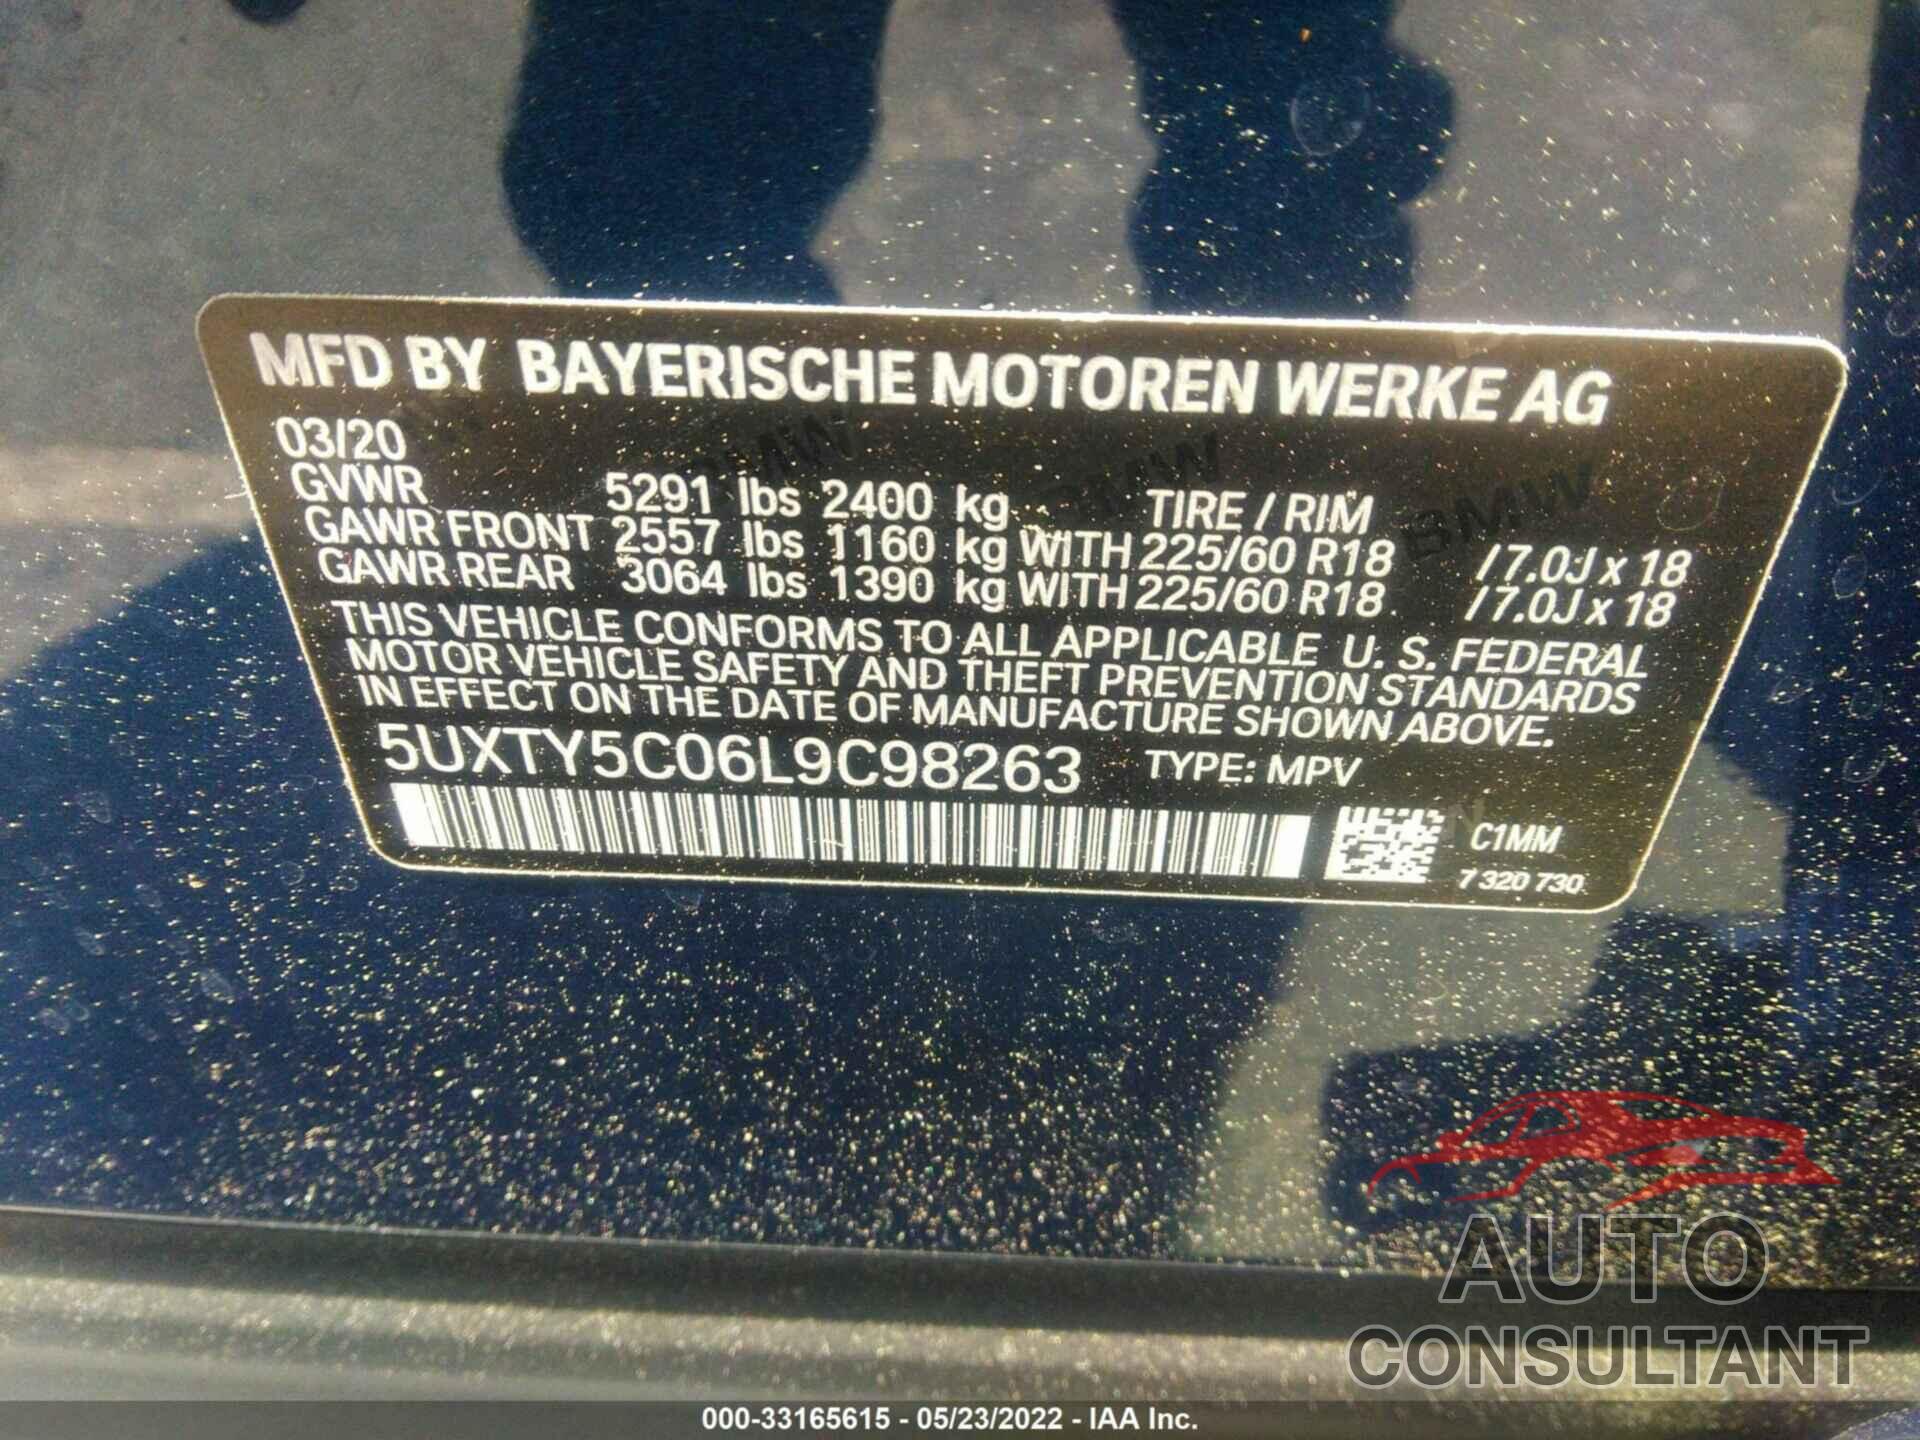 BMW X3 2020 - 5UXTY5C06L9C98263